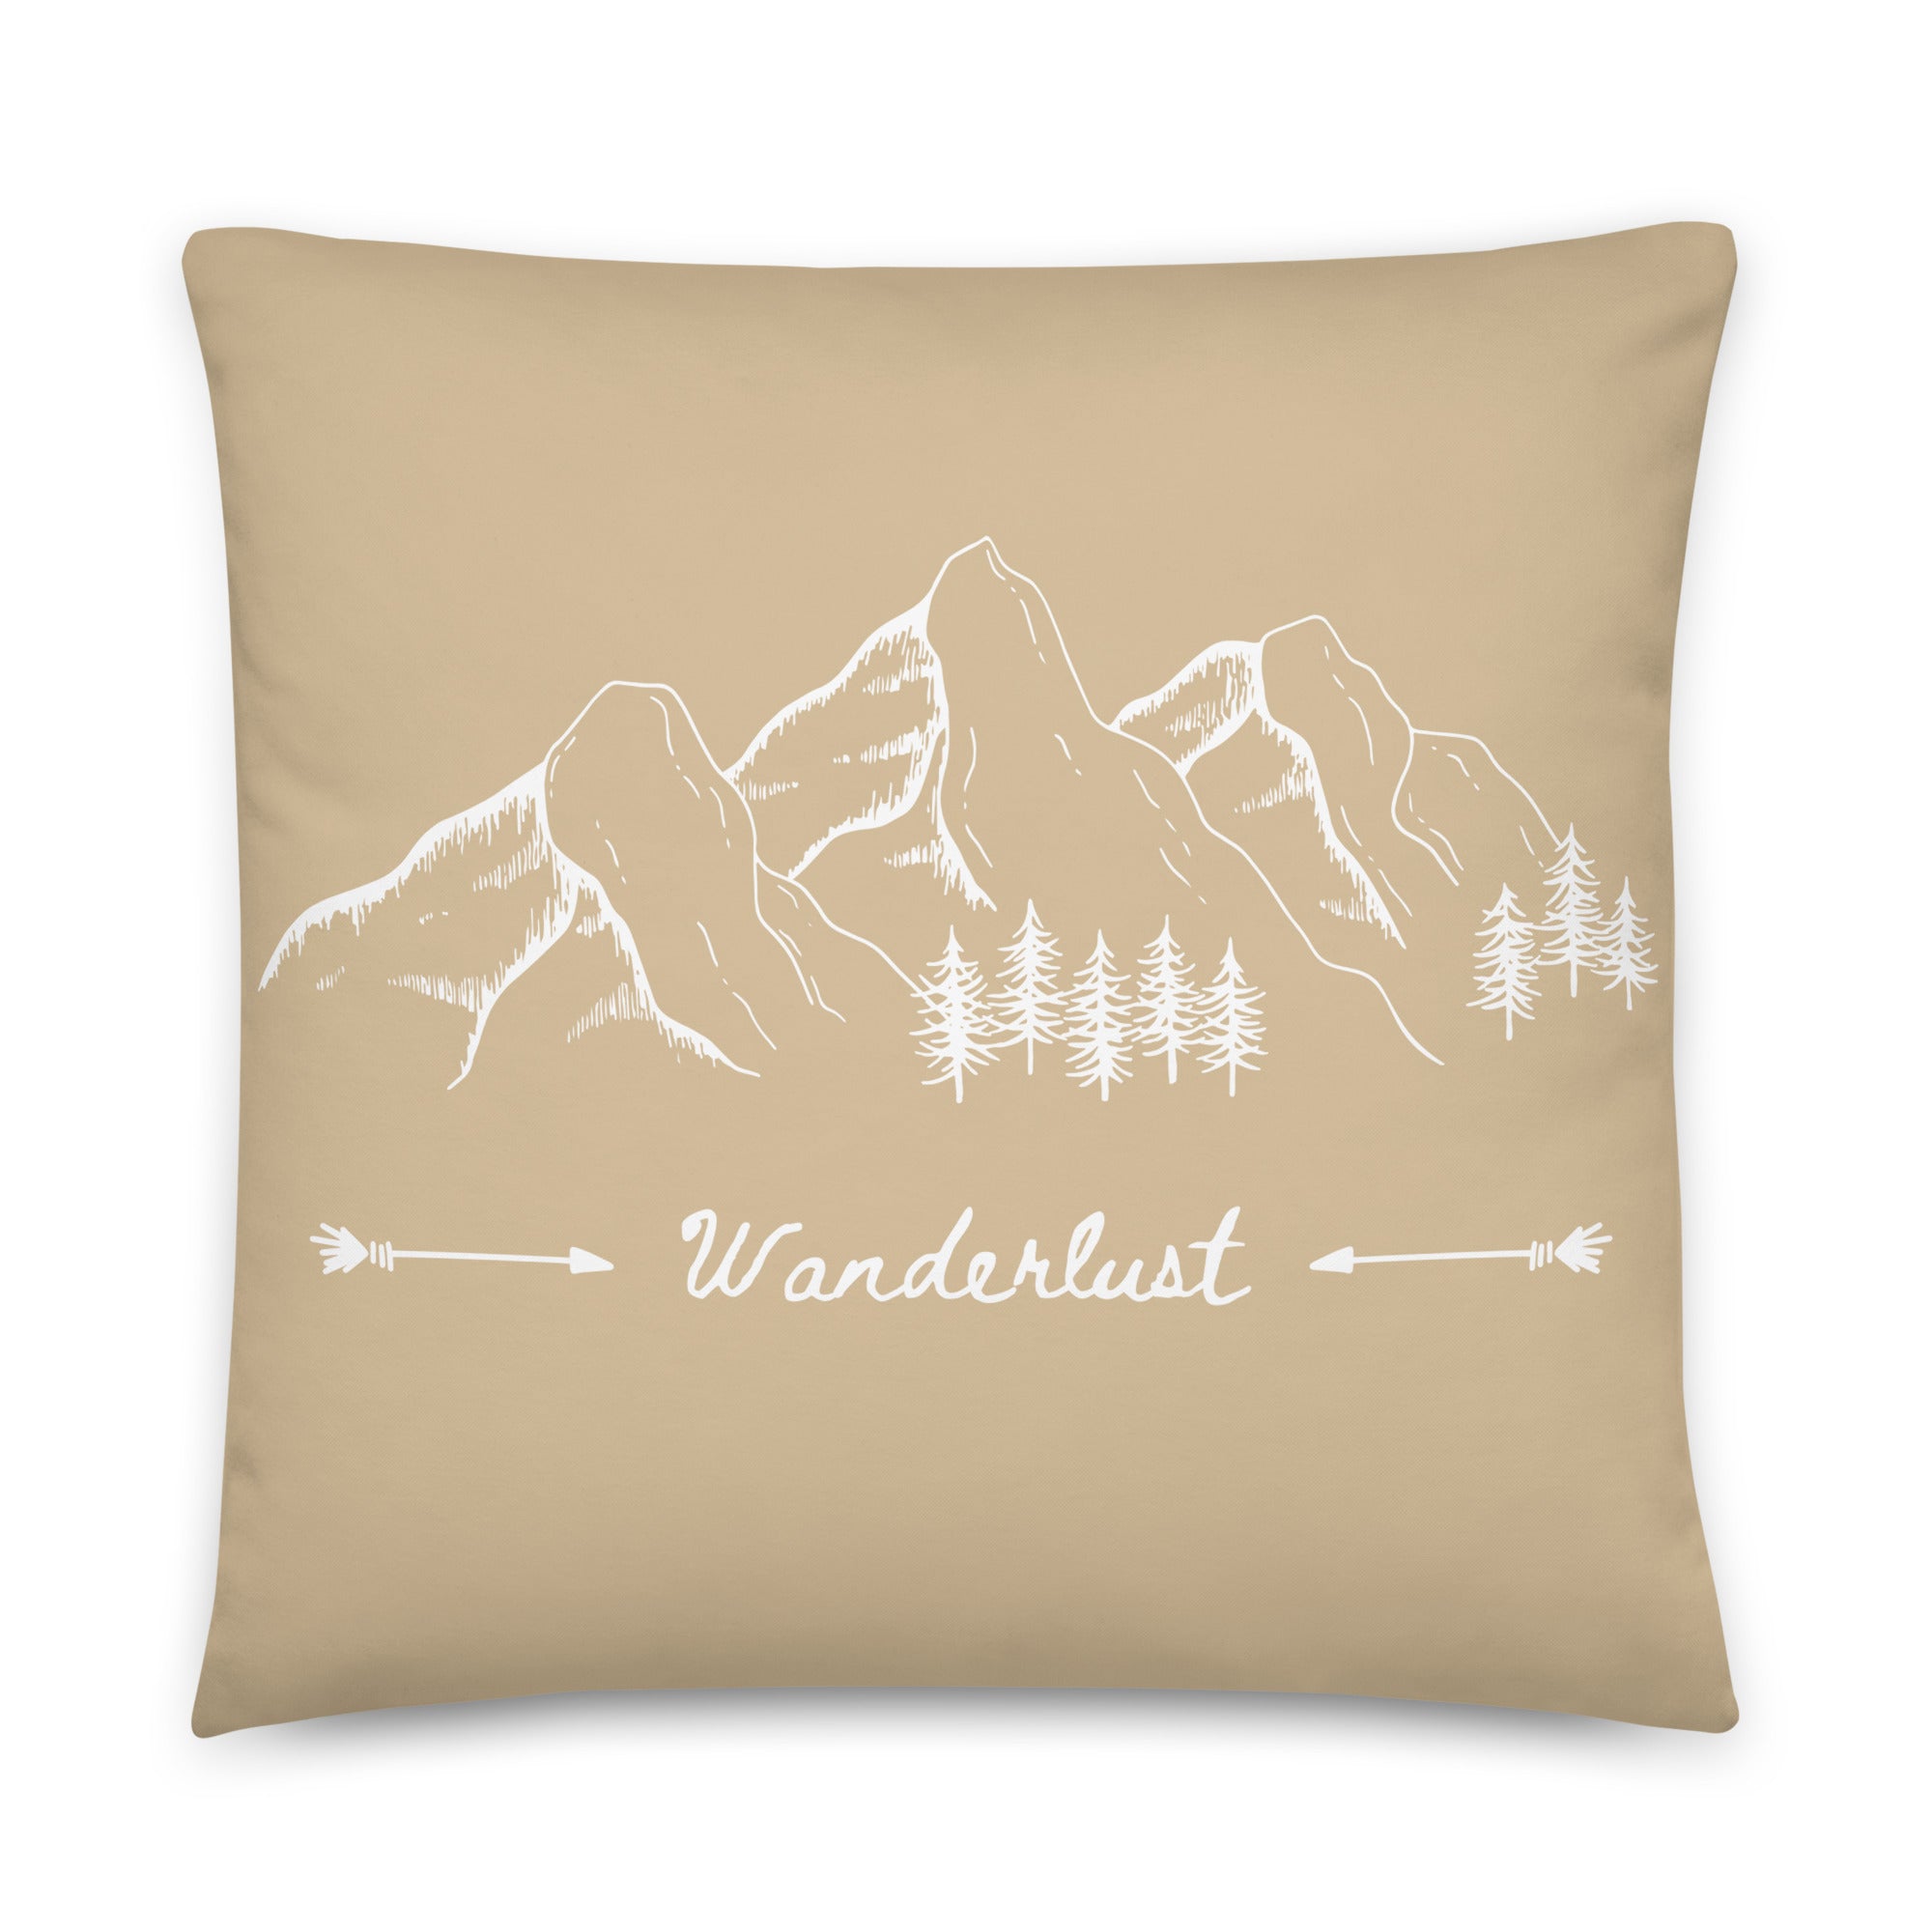 Wanderlust - Throw Pillow